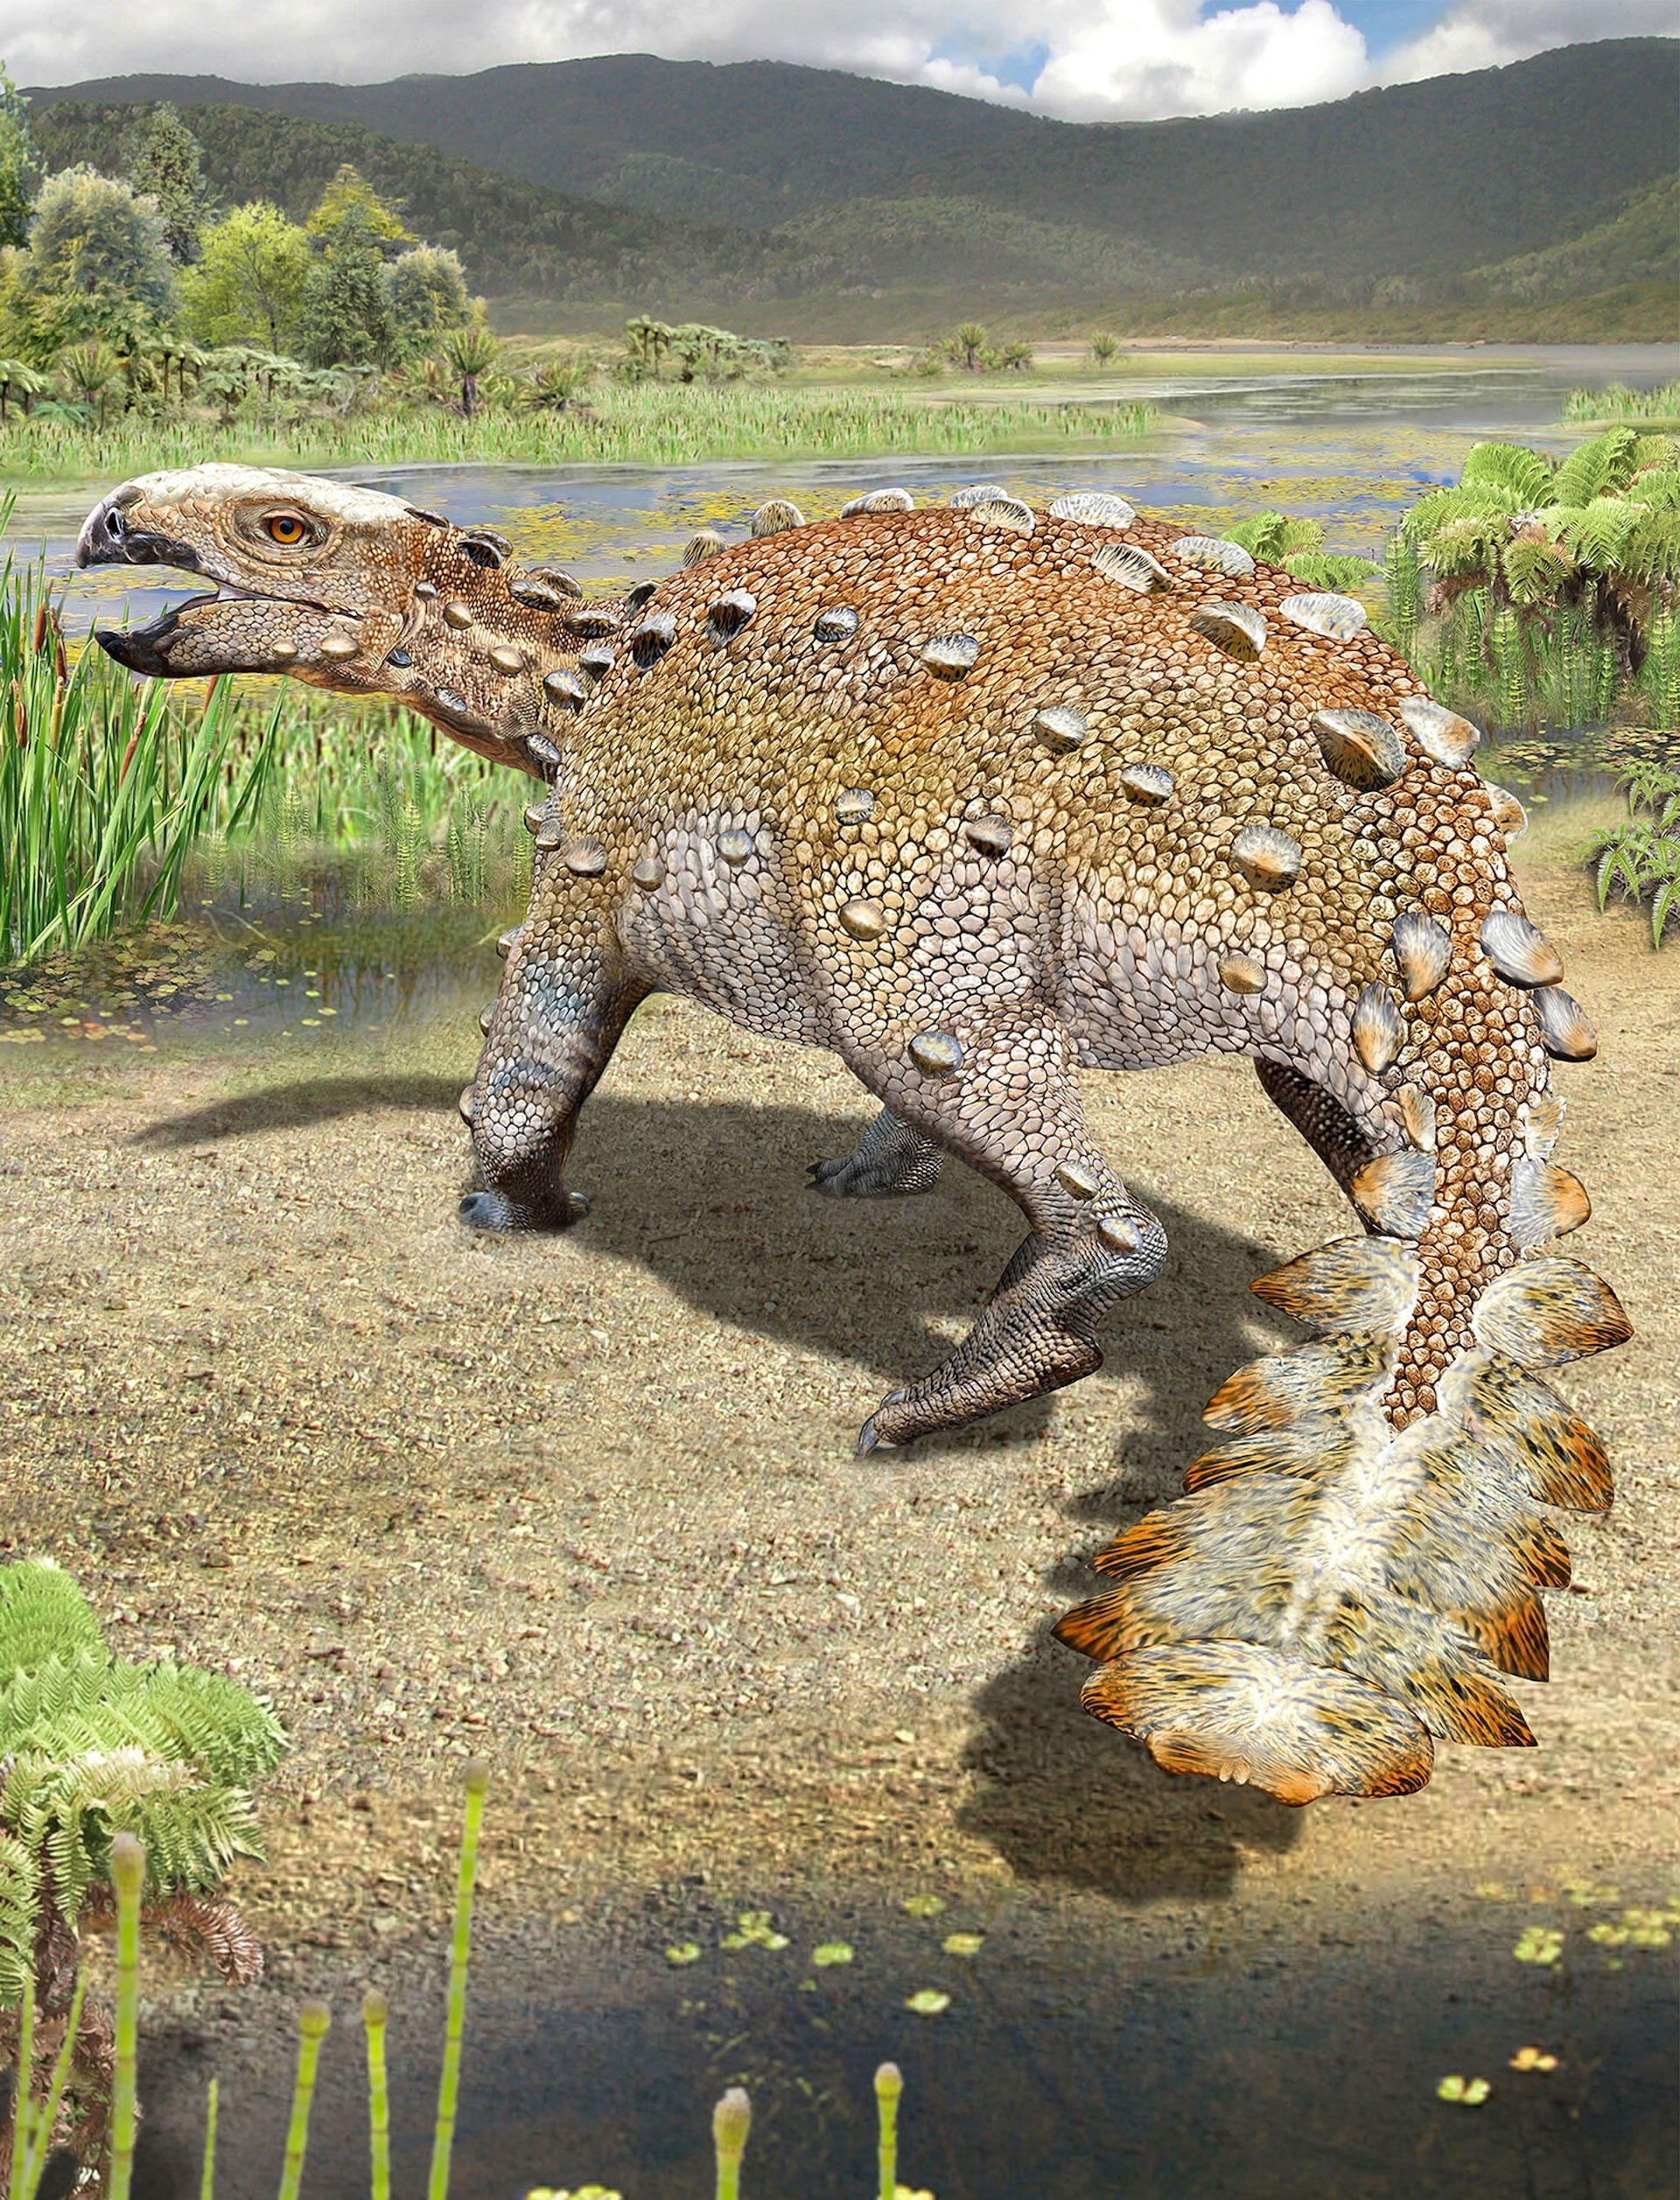 智利出土的7300万年前新种恐龙——伊伦盖森覆尾龙尾巴有如黑曜石砍刀